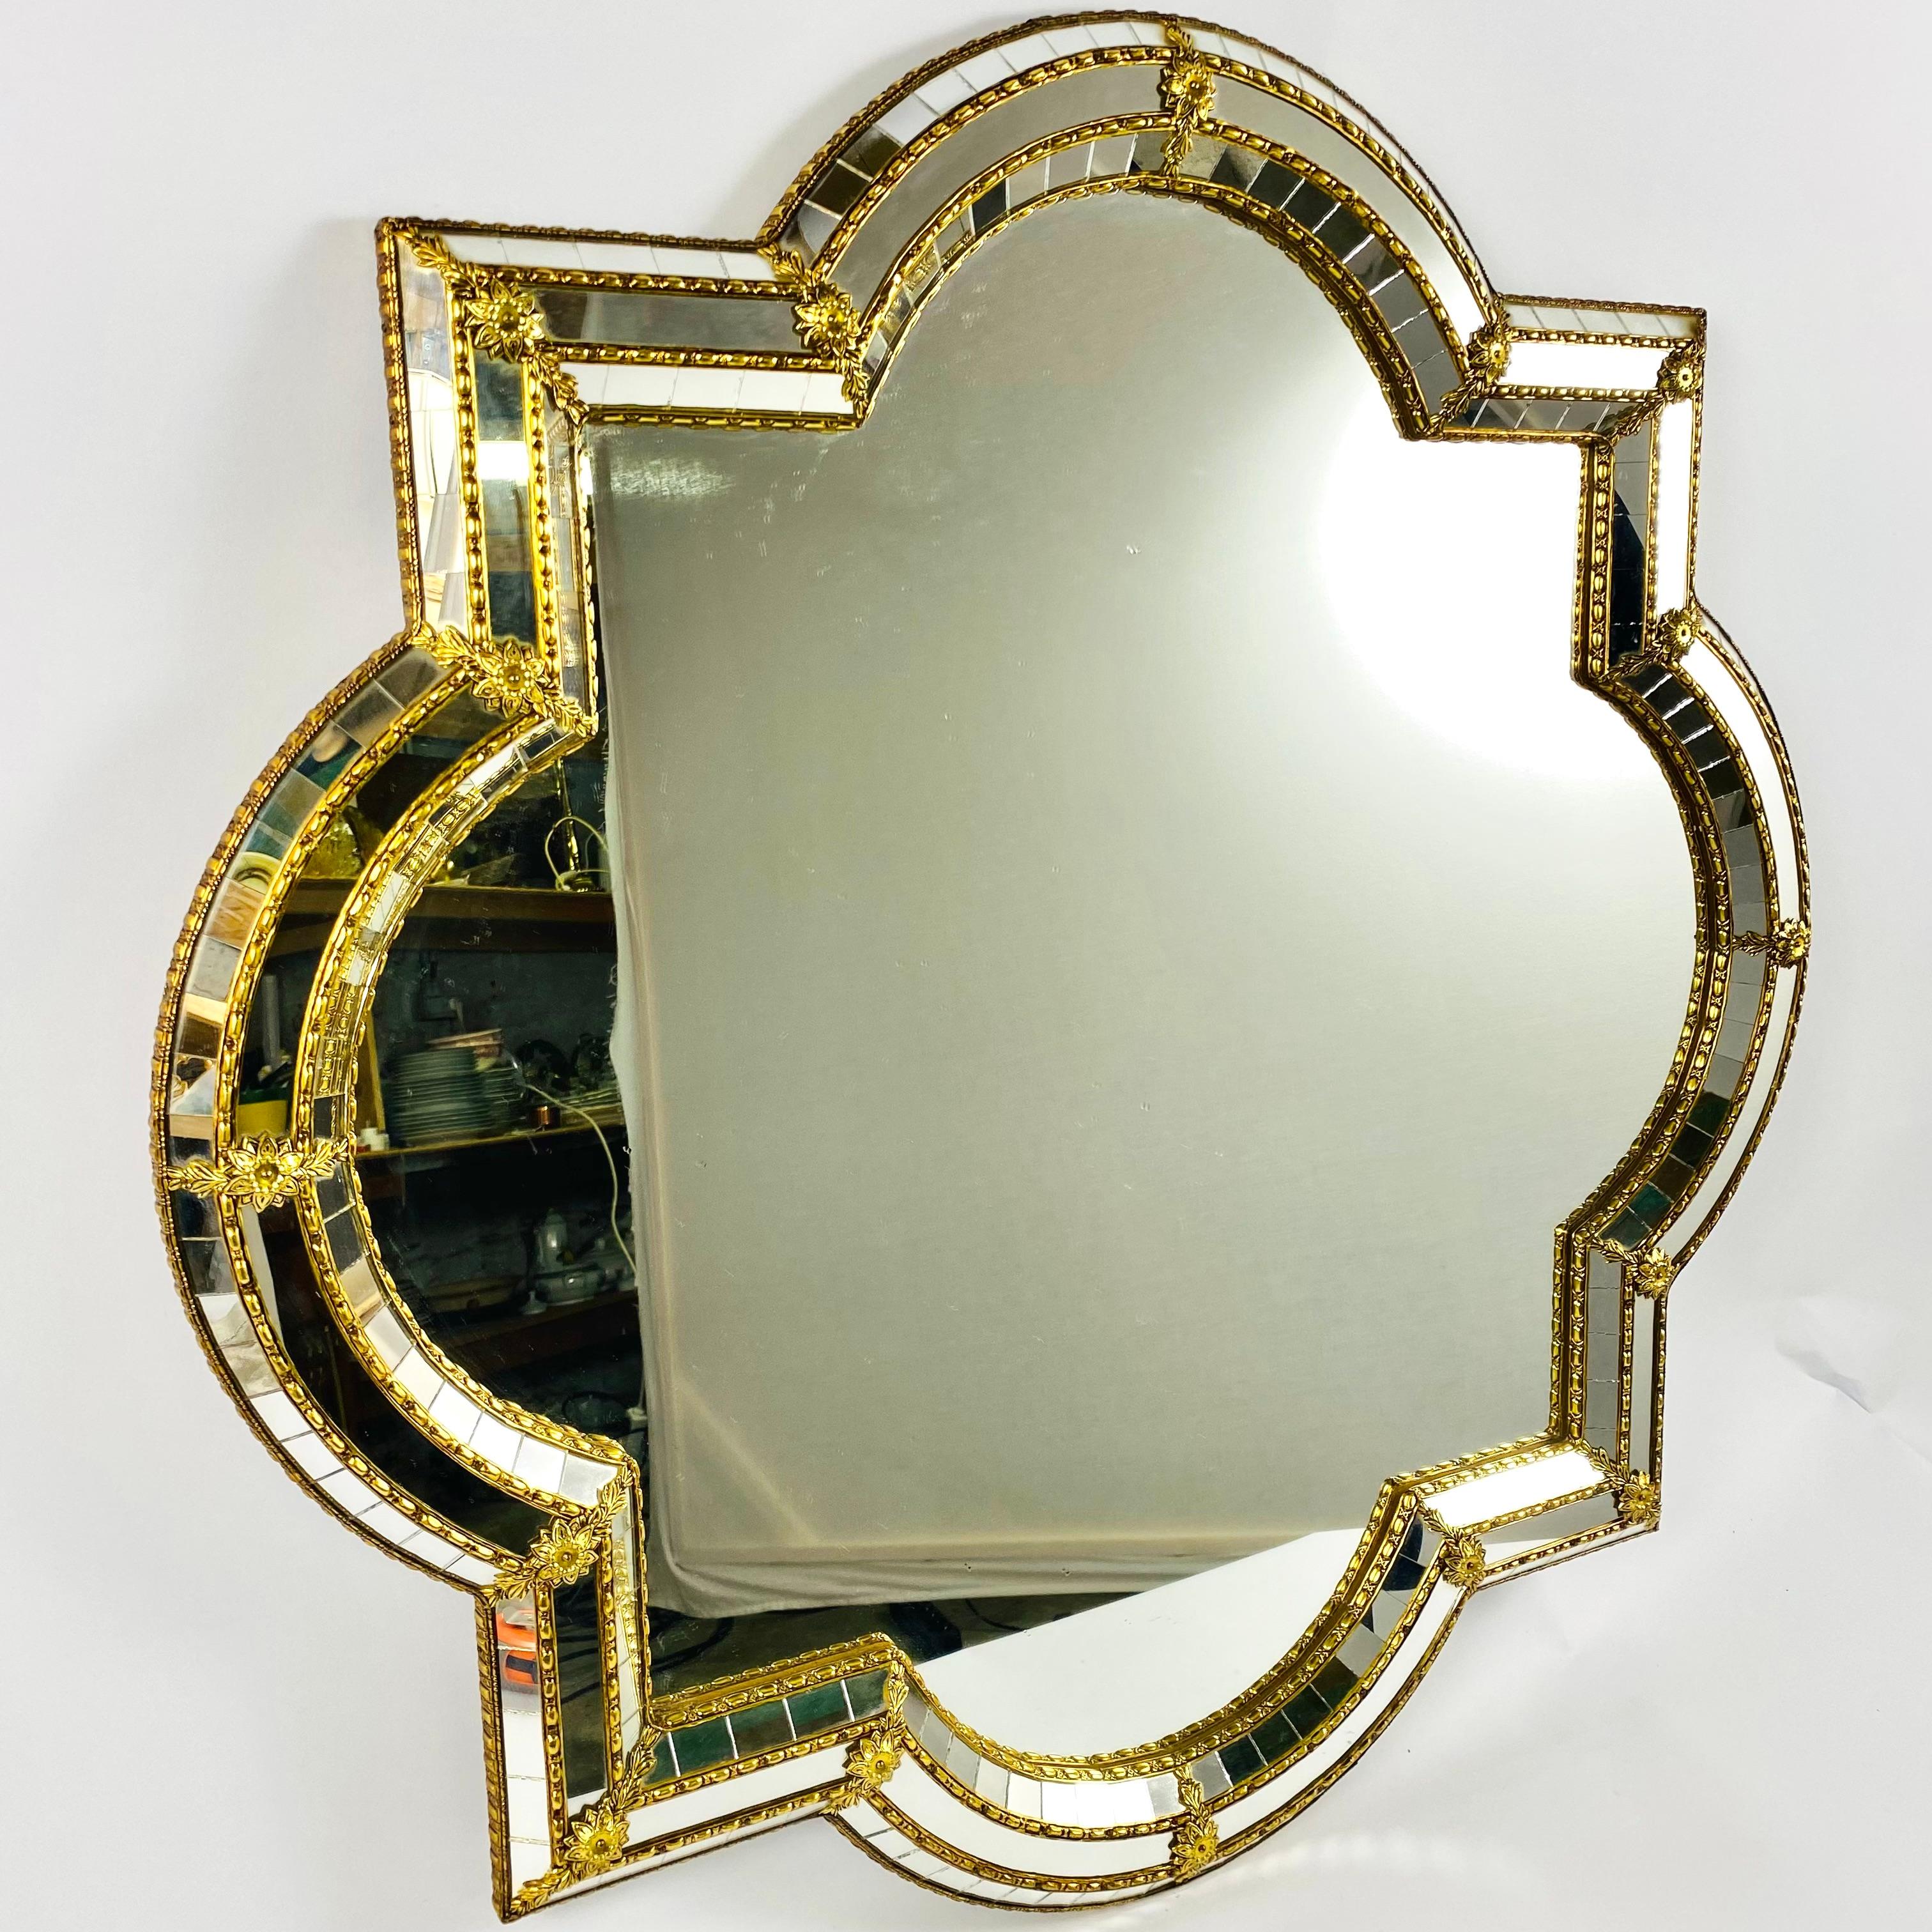 Magnifique miroir vénitien ovale/carré fait à la main en Italie, Florence, années 1970.

Le cadre comporte des vitres coupées sur toute la largeur, le tout étant maintenu par une bande de laiton.

Le miroir trapézoïdal est orné d'une fleur en laiton